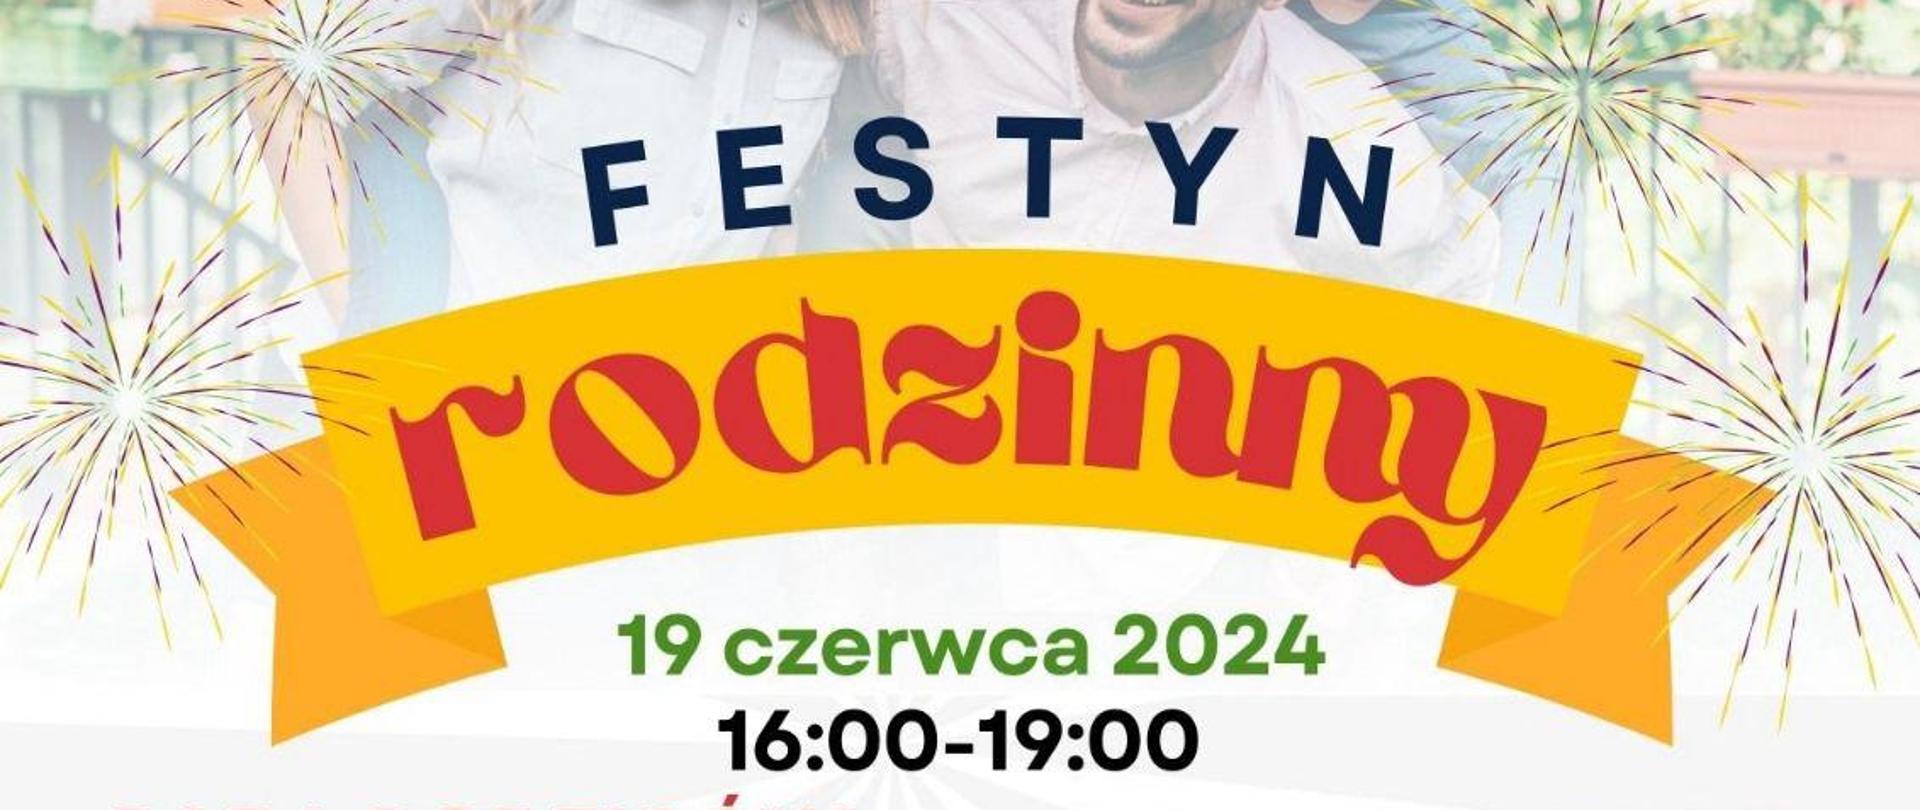 Plakat Festyn rodzinny organizowany przez Radę Rodziców przy PSM w Wolsztynie w dniu 19 czerwca 2024 w godzinach 16:00 - 19:00. W tle zdjęcie dzieci wraz z rodzicami.